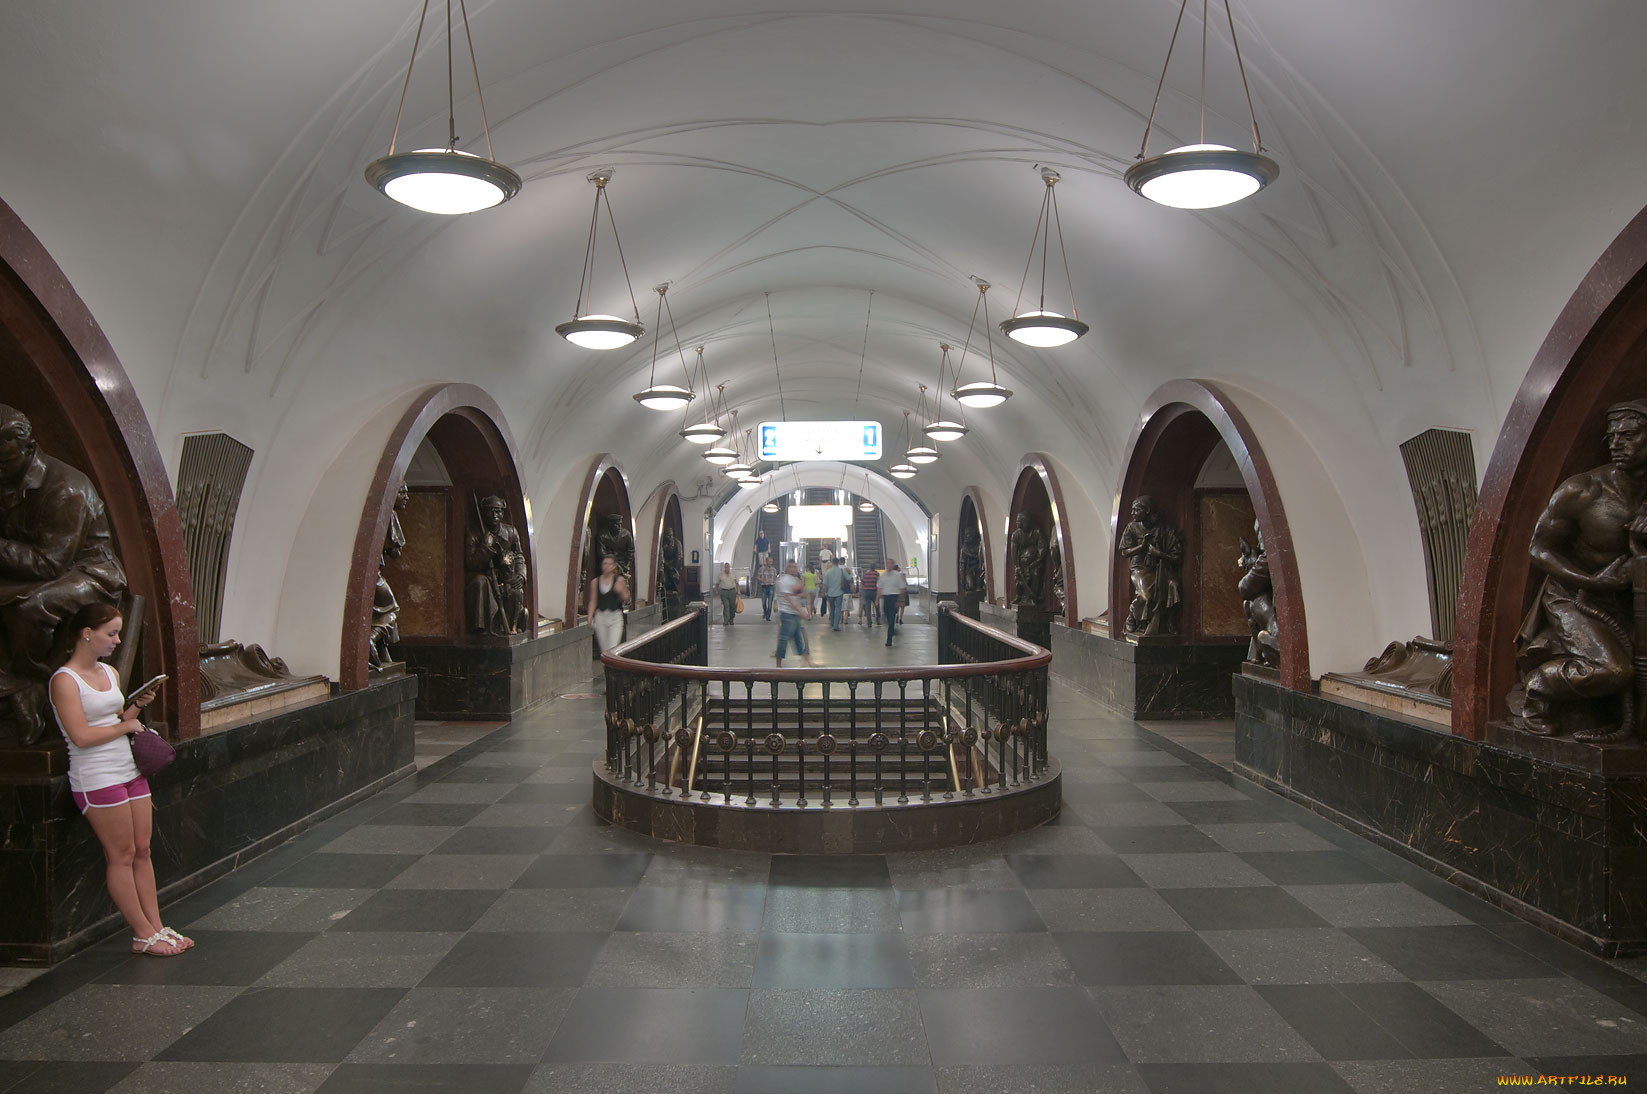 Арбатско-Покровская линия, станция площадь революции